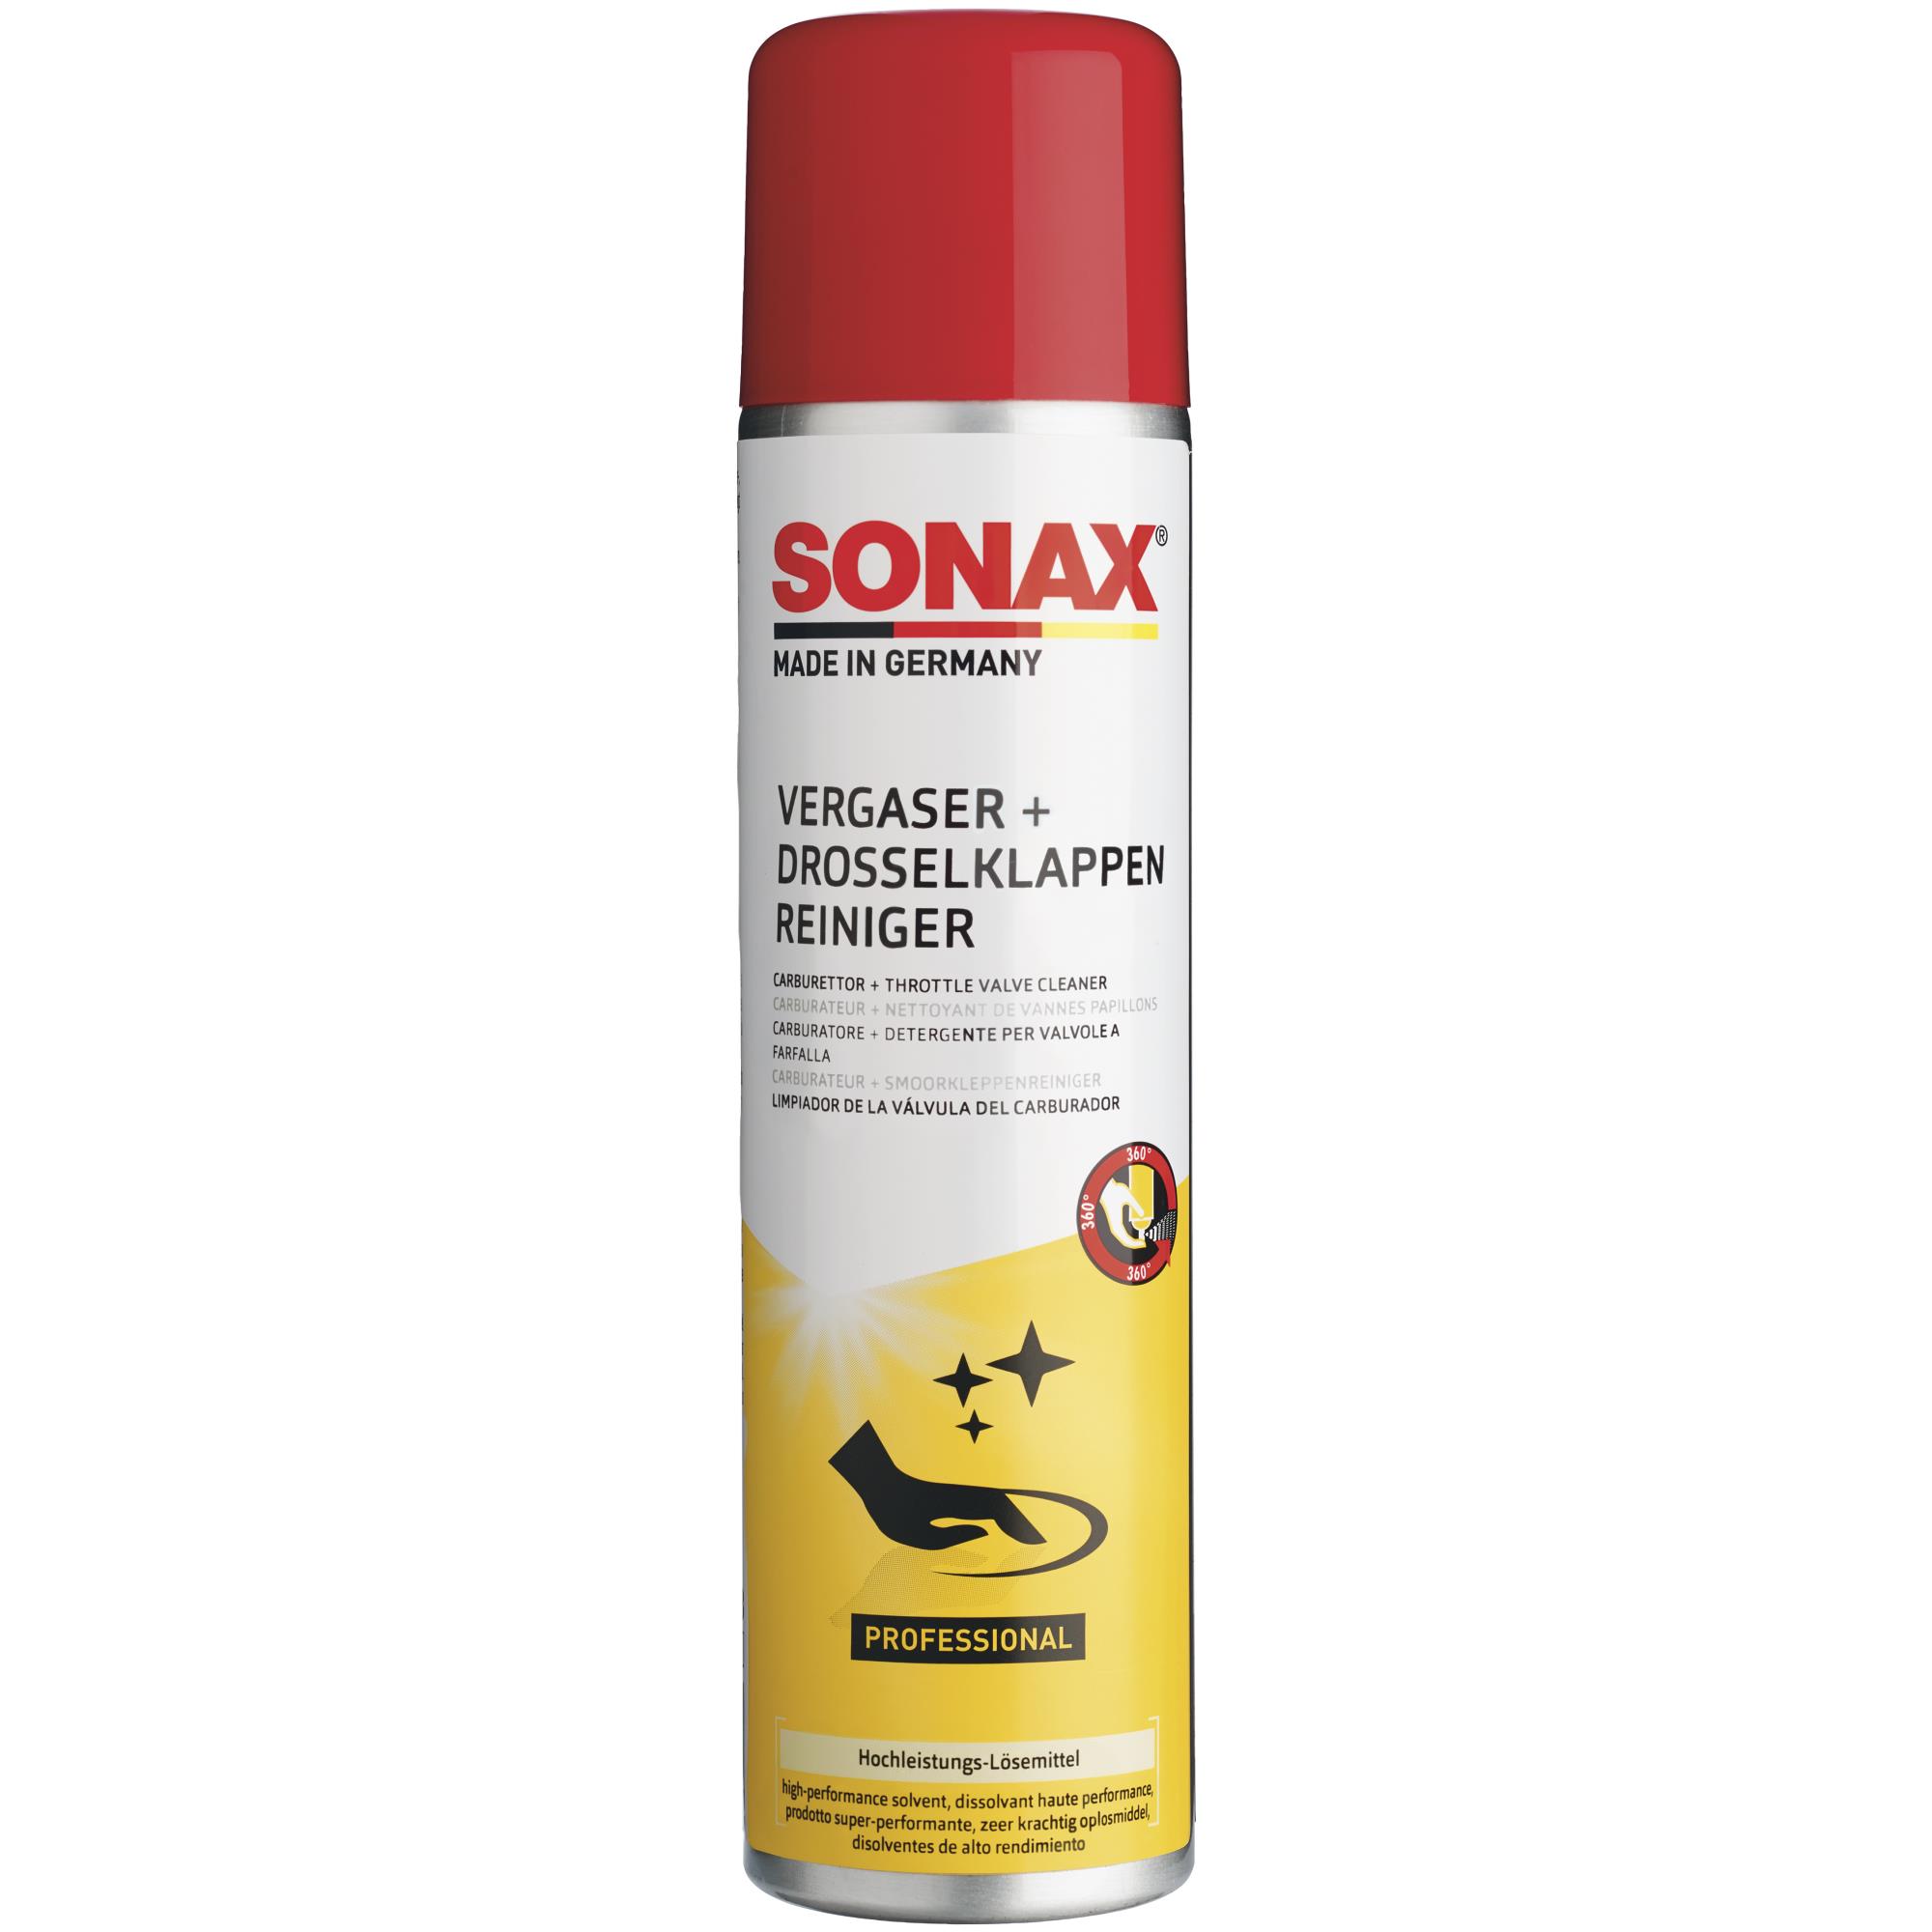 SONAX Vergaser + DrosselklappenReiniger Motorteilereinigung 400 ml